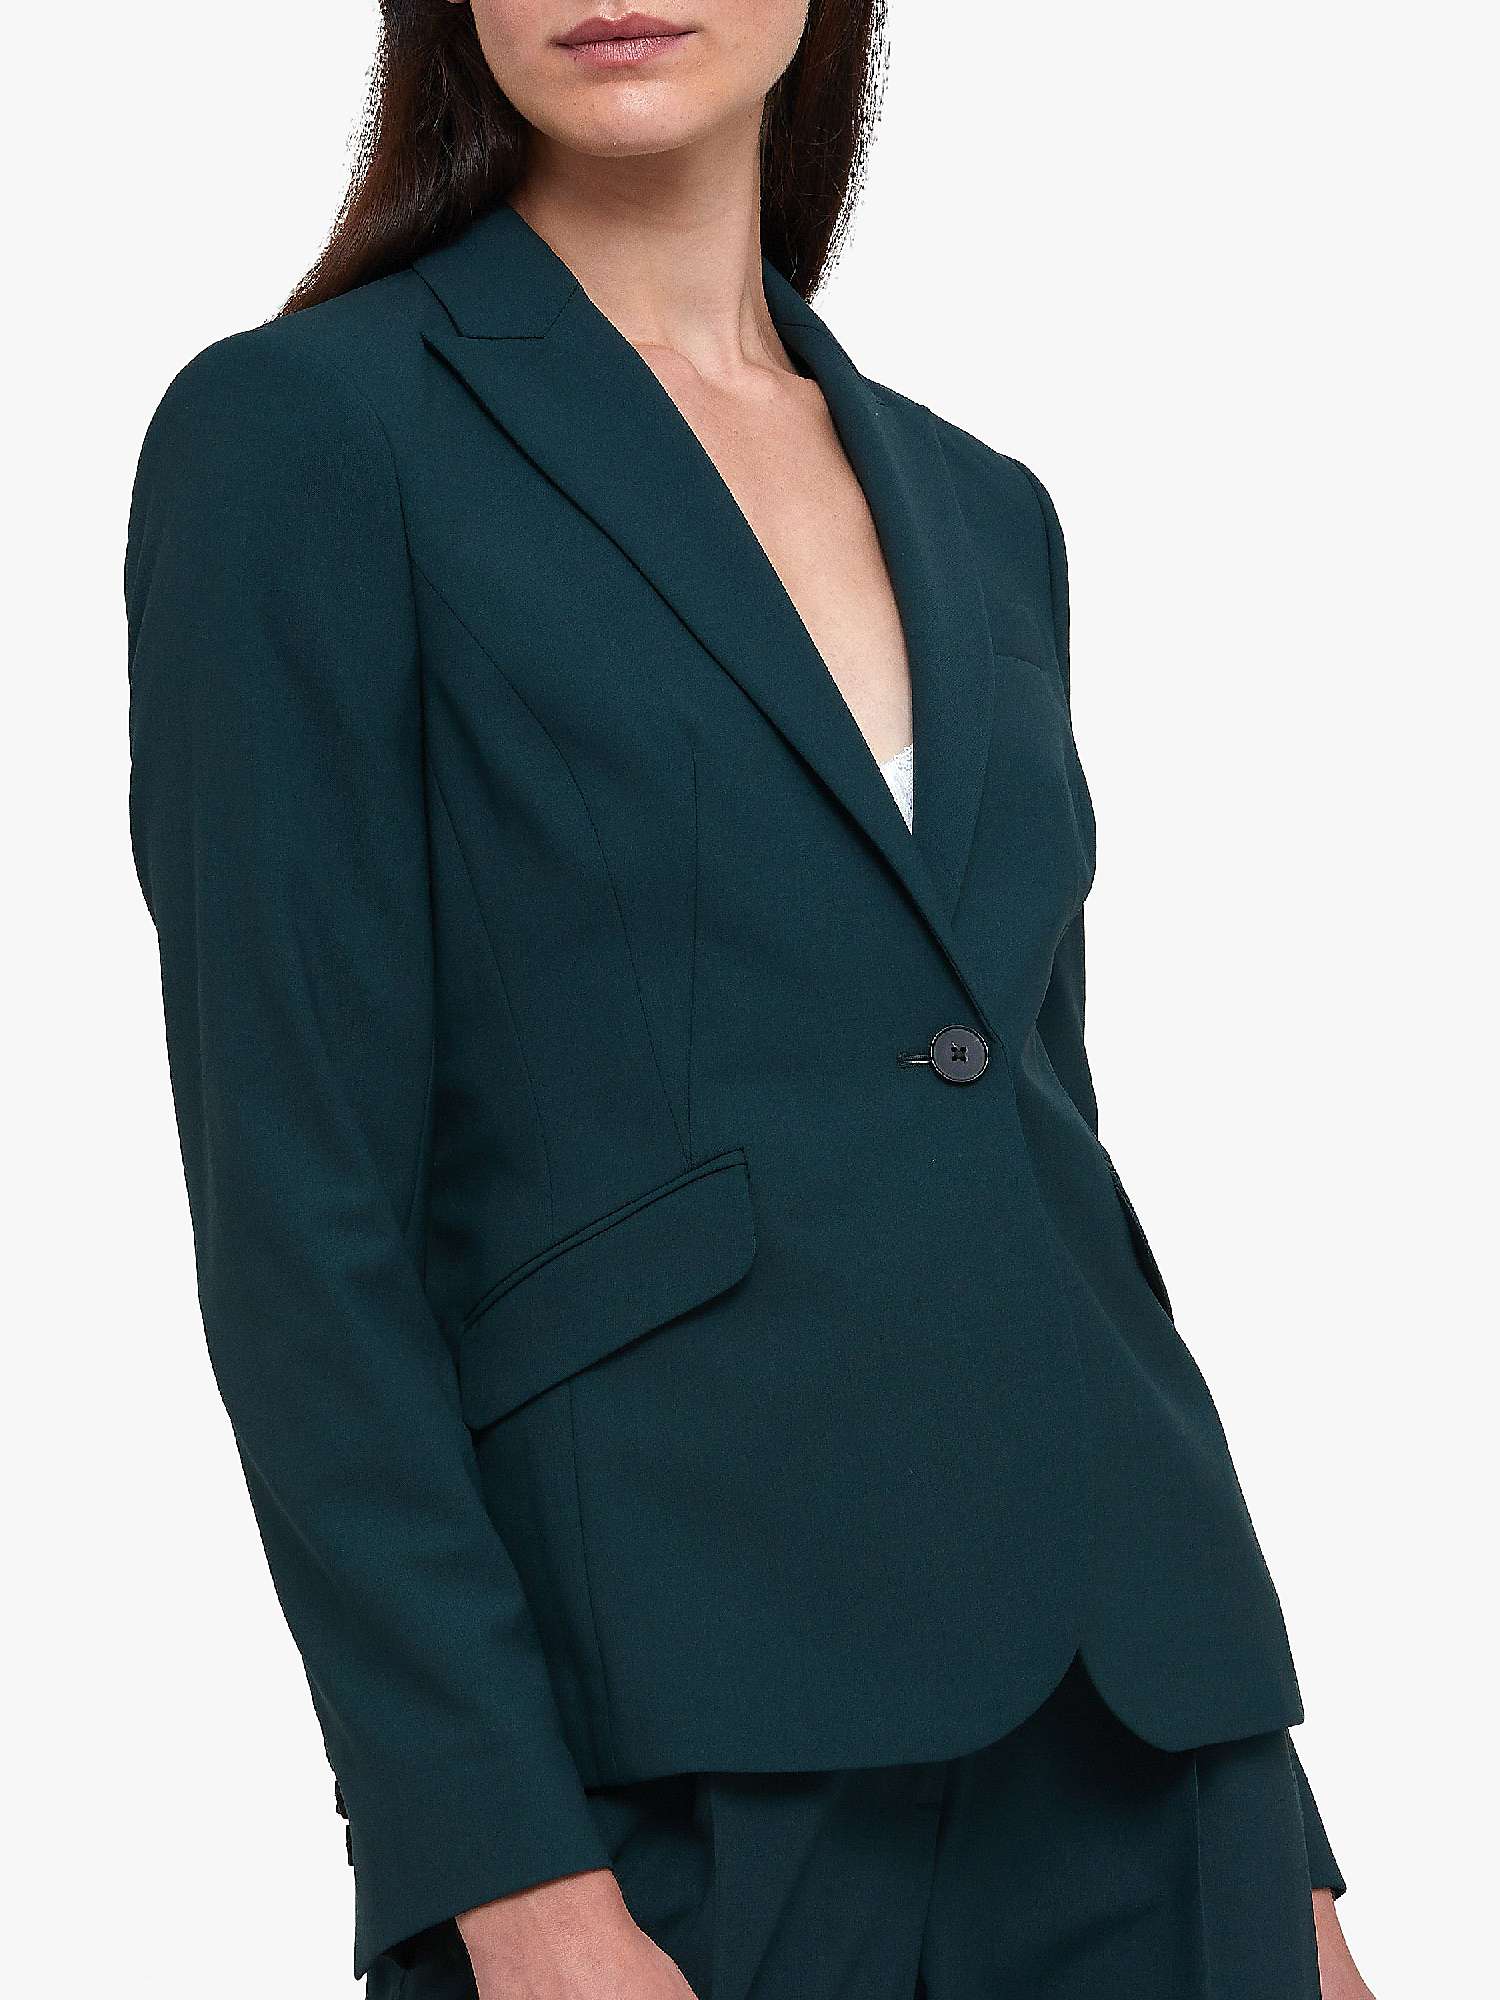 Buy Helen McAlinden Gerry Casual Jacket, Dark Emerald Online at johnlewis.com